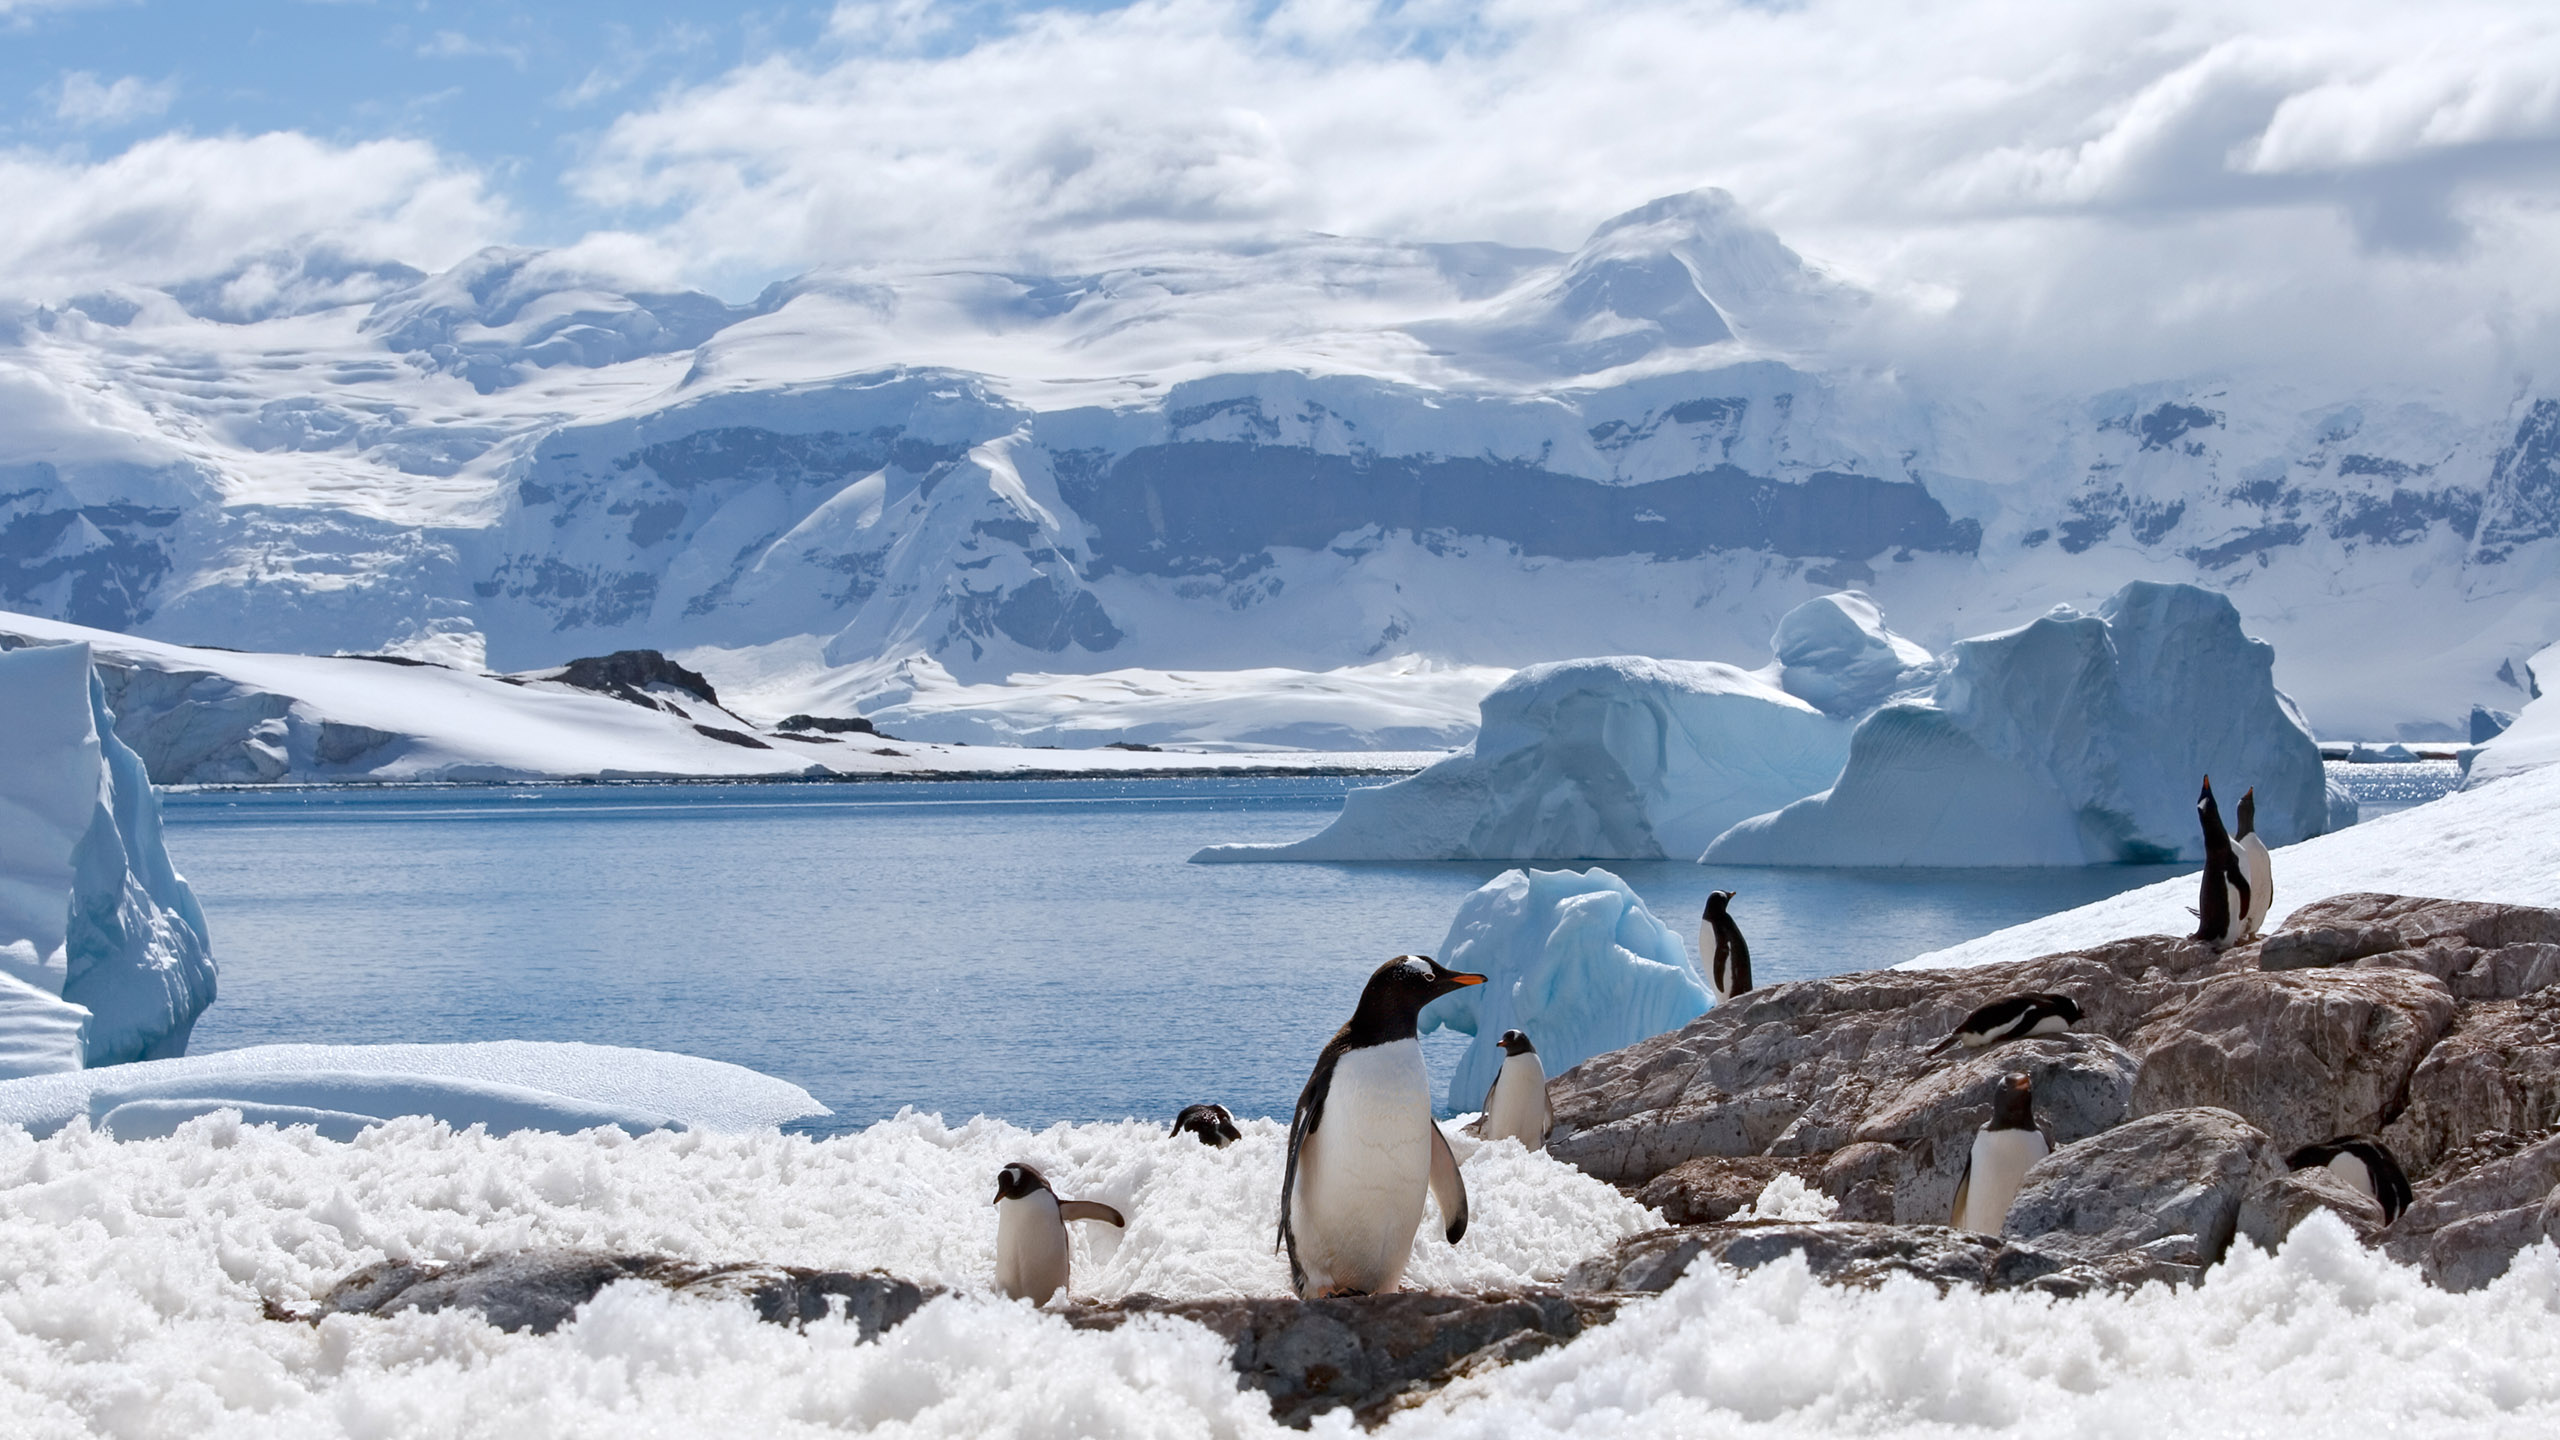 Some Penguins walking in Antarctica